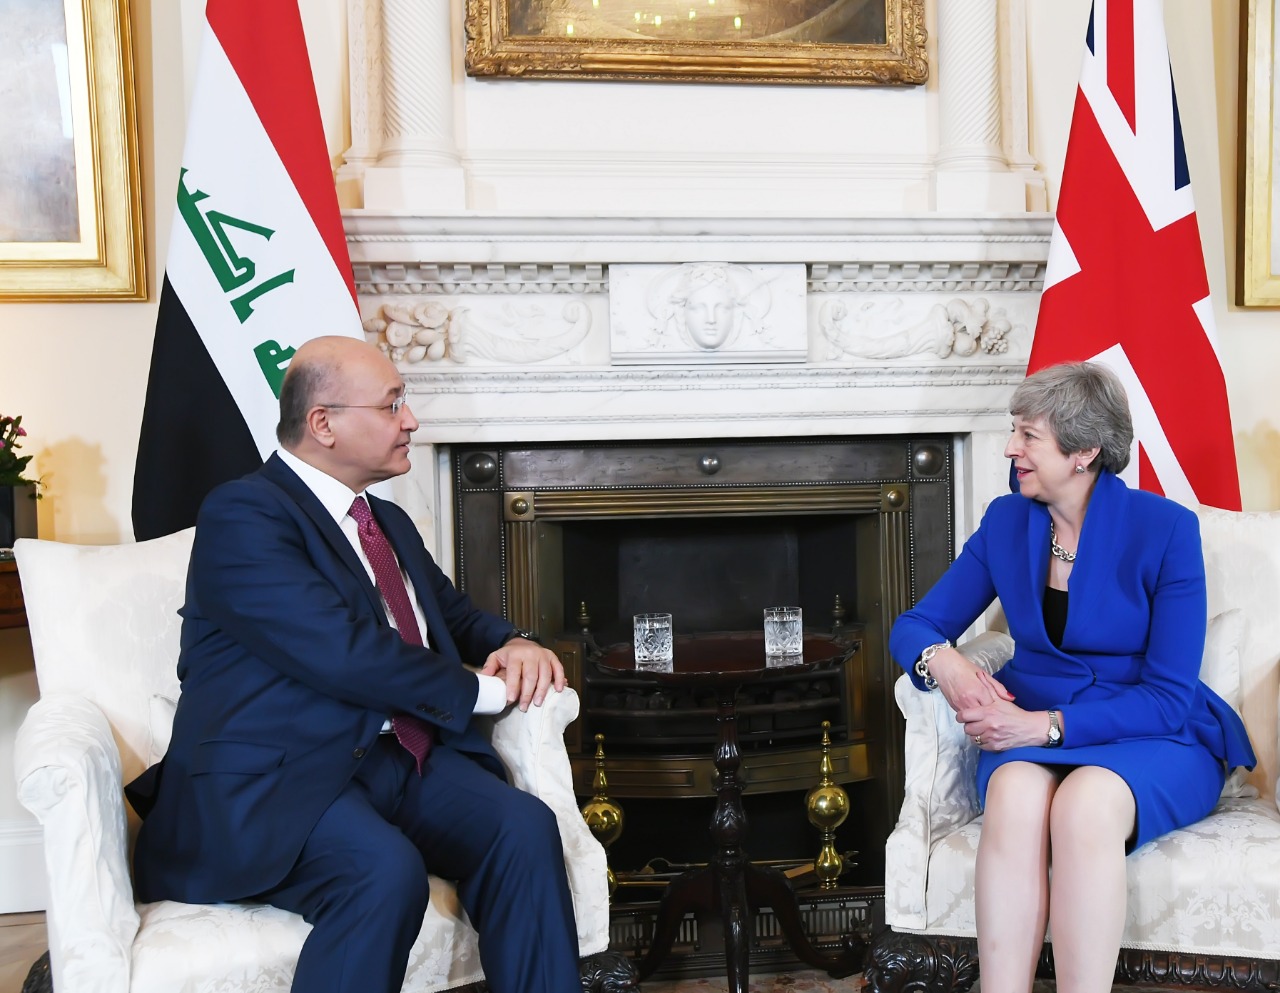 العراق يدعو بريطانيا للعب دور بتخفيف التوتر في المنطقة